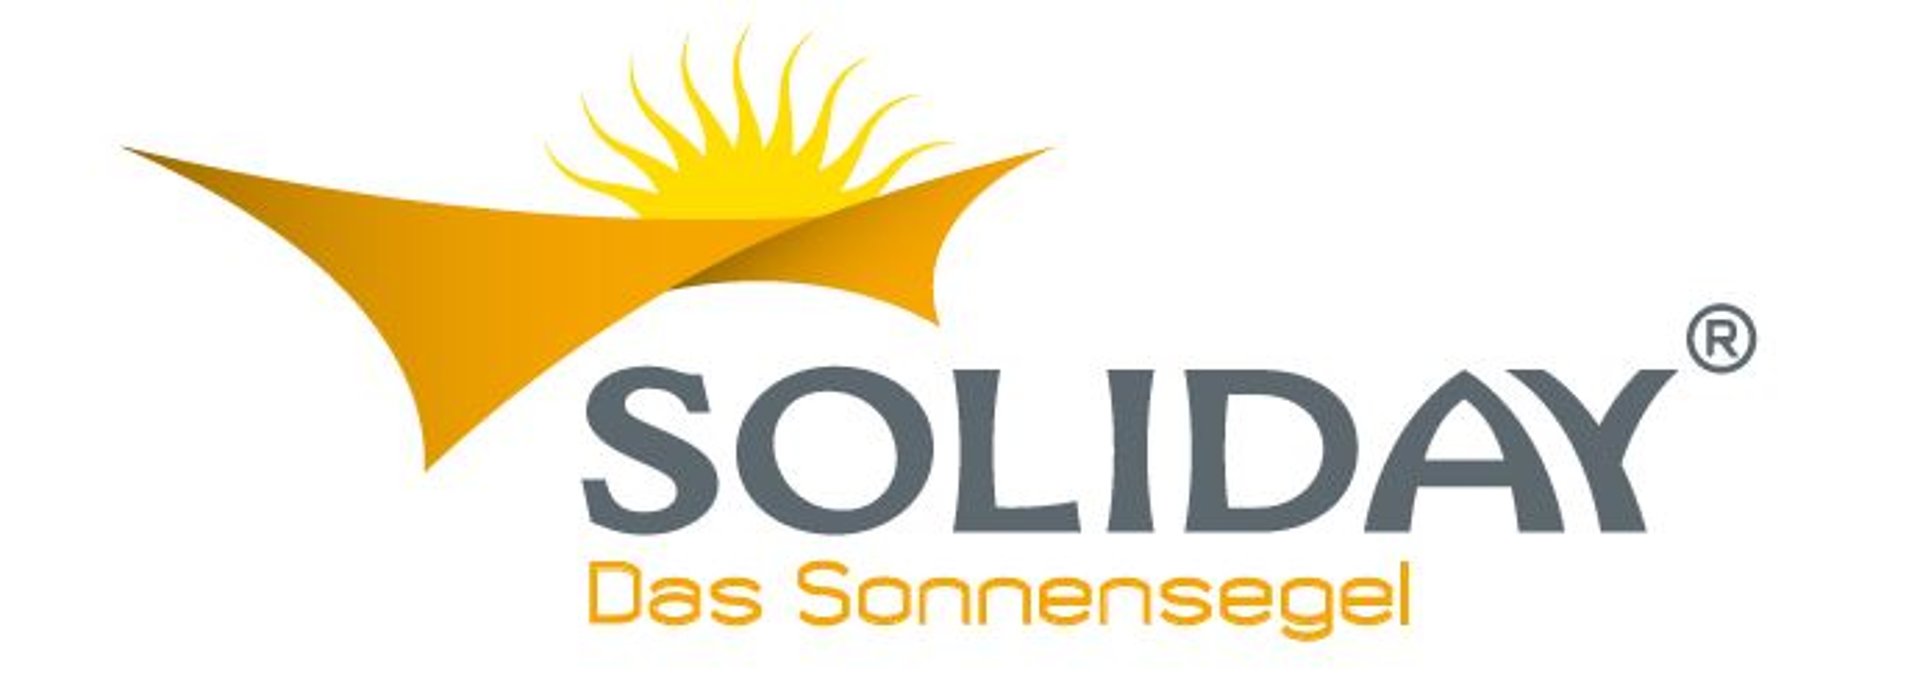 Soliday - das Sonnensegel